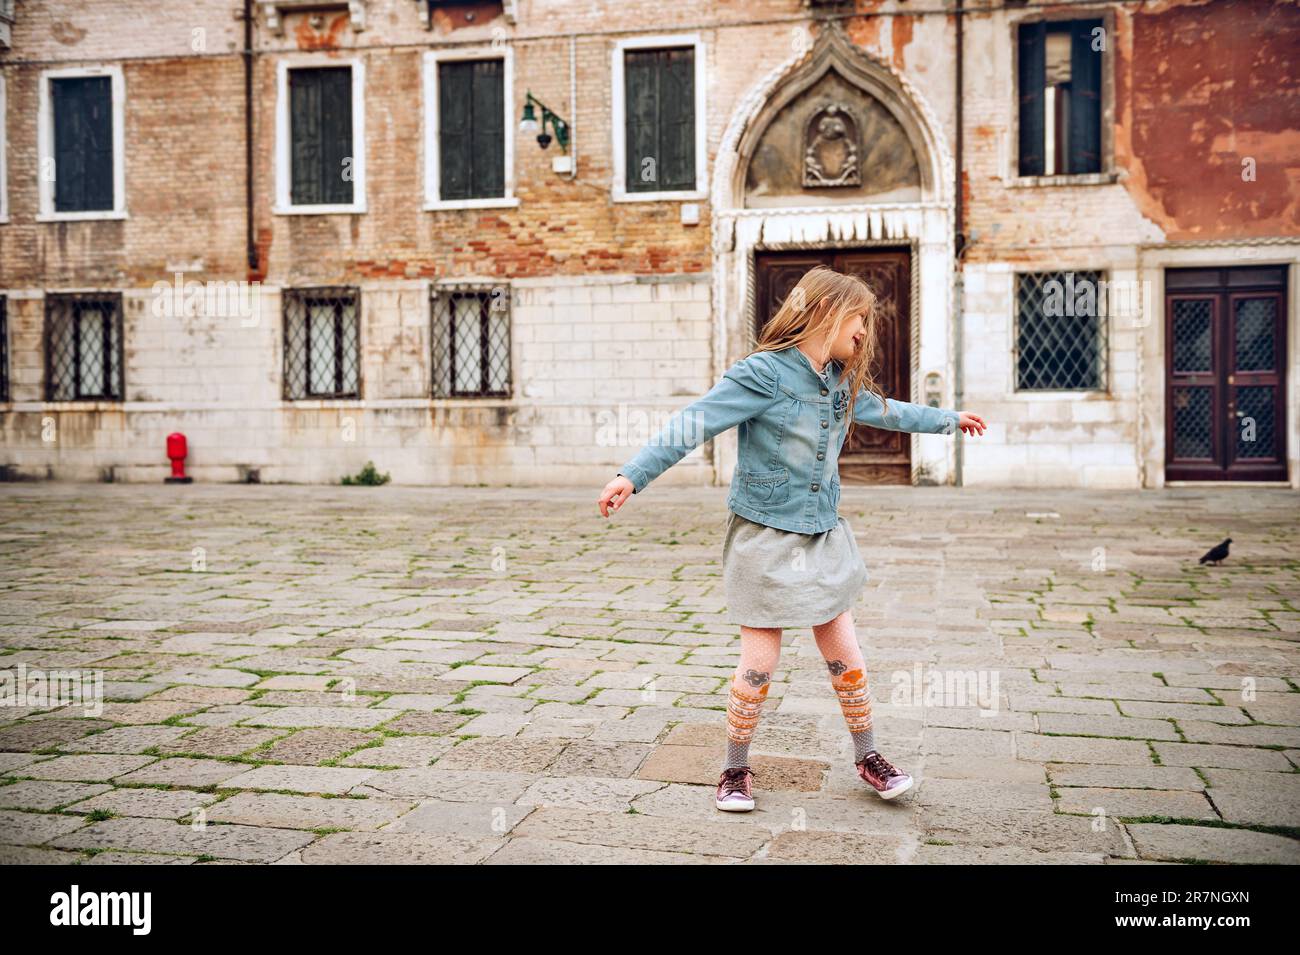 Außenporträt eines hübschen Mädchens, das durch die alten italienischen Straßen läuft, und ein Kind tanzt draußen. Stockfoto